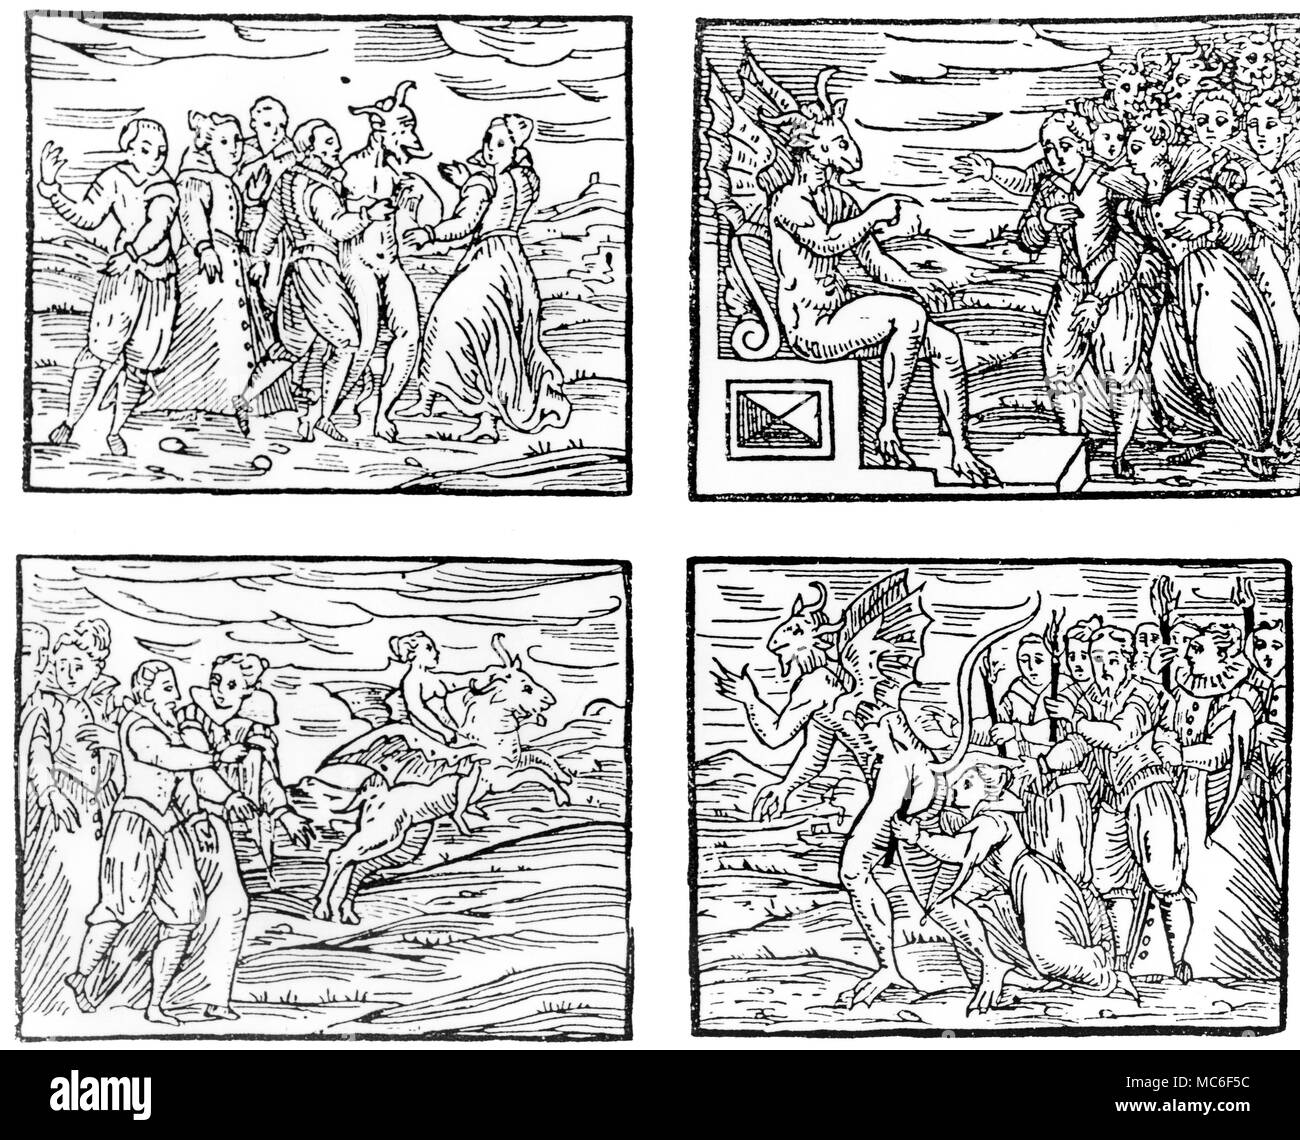 Hexerei, von Der 1608 von eition Guazzo's Kompendium Maleficarum' - Hexen Tanz mit dem Teufel. Teufel geben Predigt zu Hexen am Sabbat. Hexe transvecting auf Ziege. Hexe gicing der Kuss der infame. Stockfoto